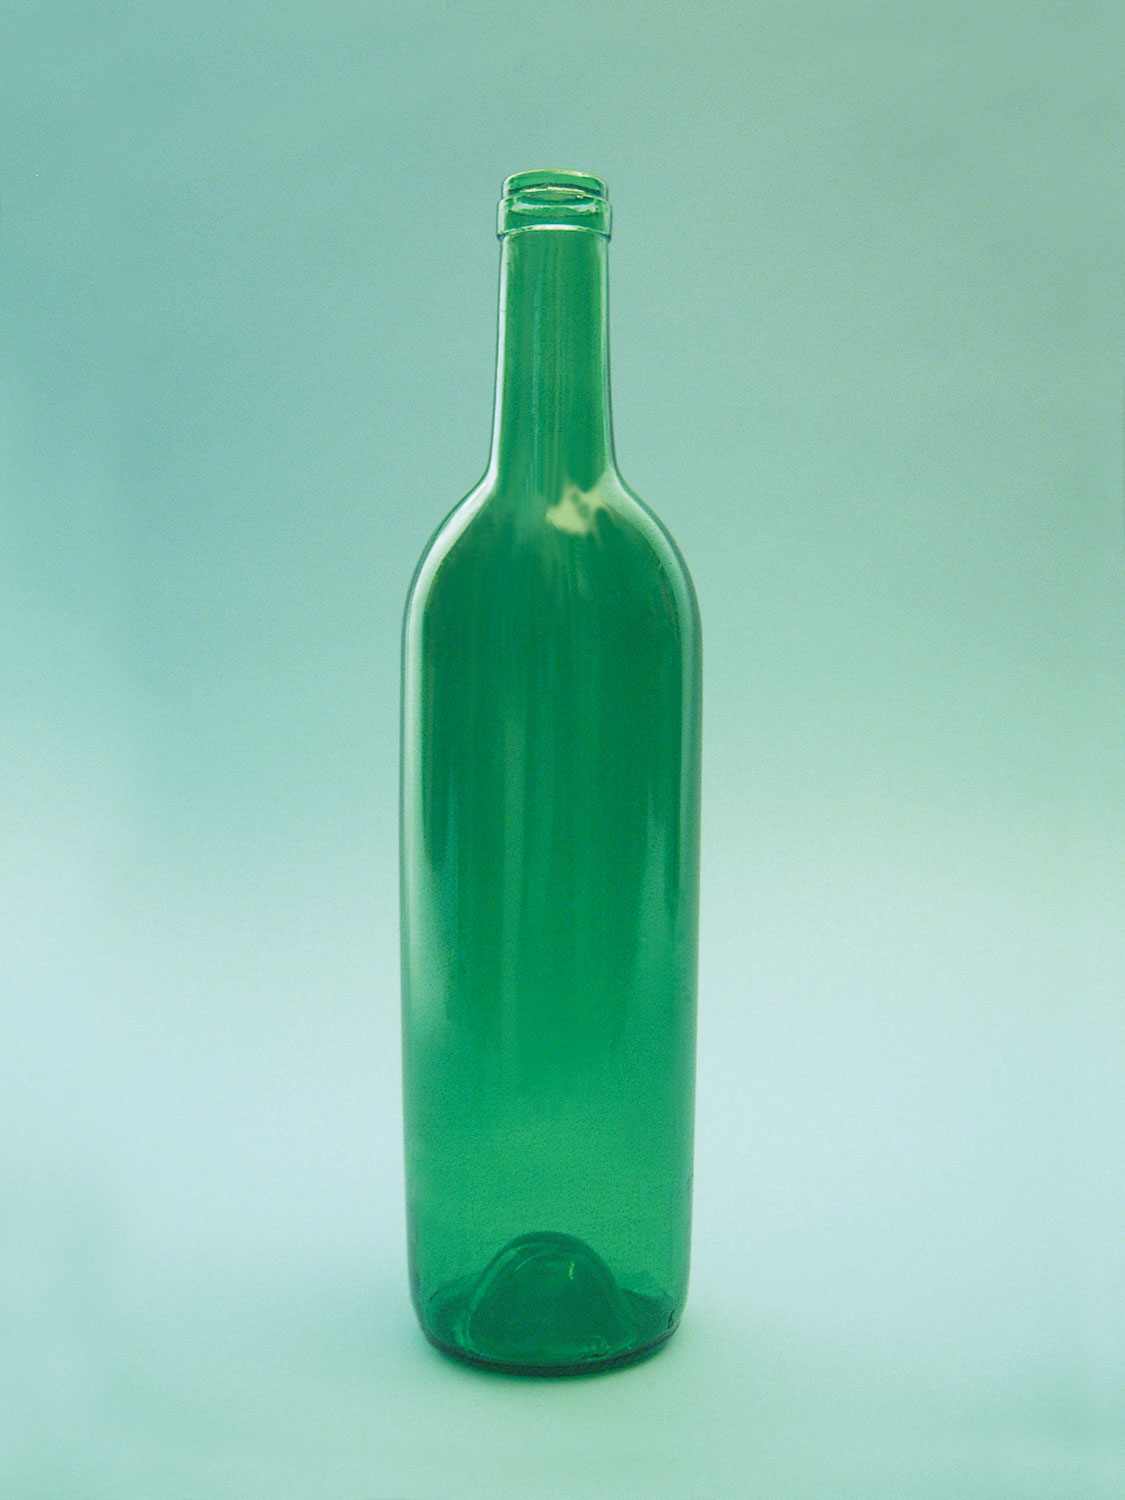 https://www.suikerglas.nl/wp-content/uploads/2019/07/0008-groene-wijnfles-suikerglas.jpg